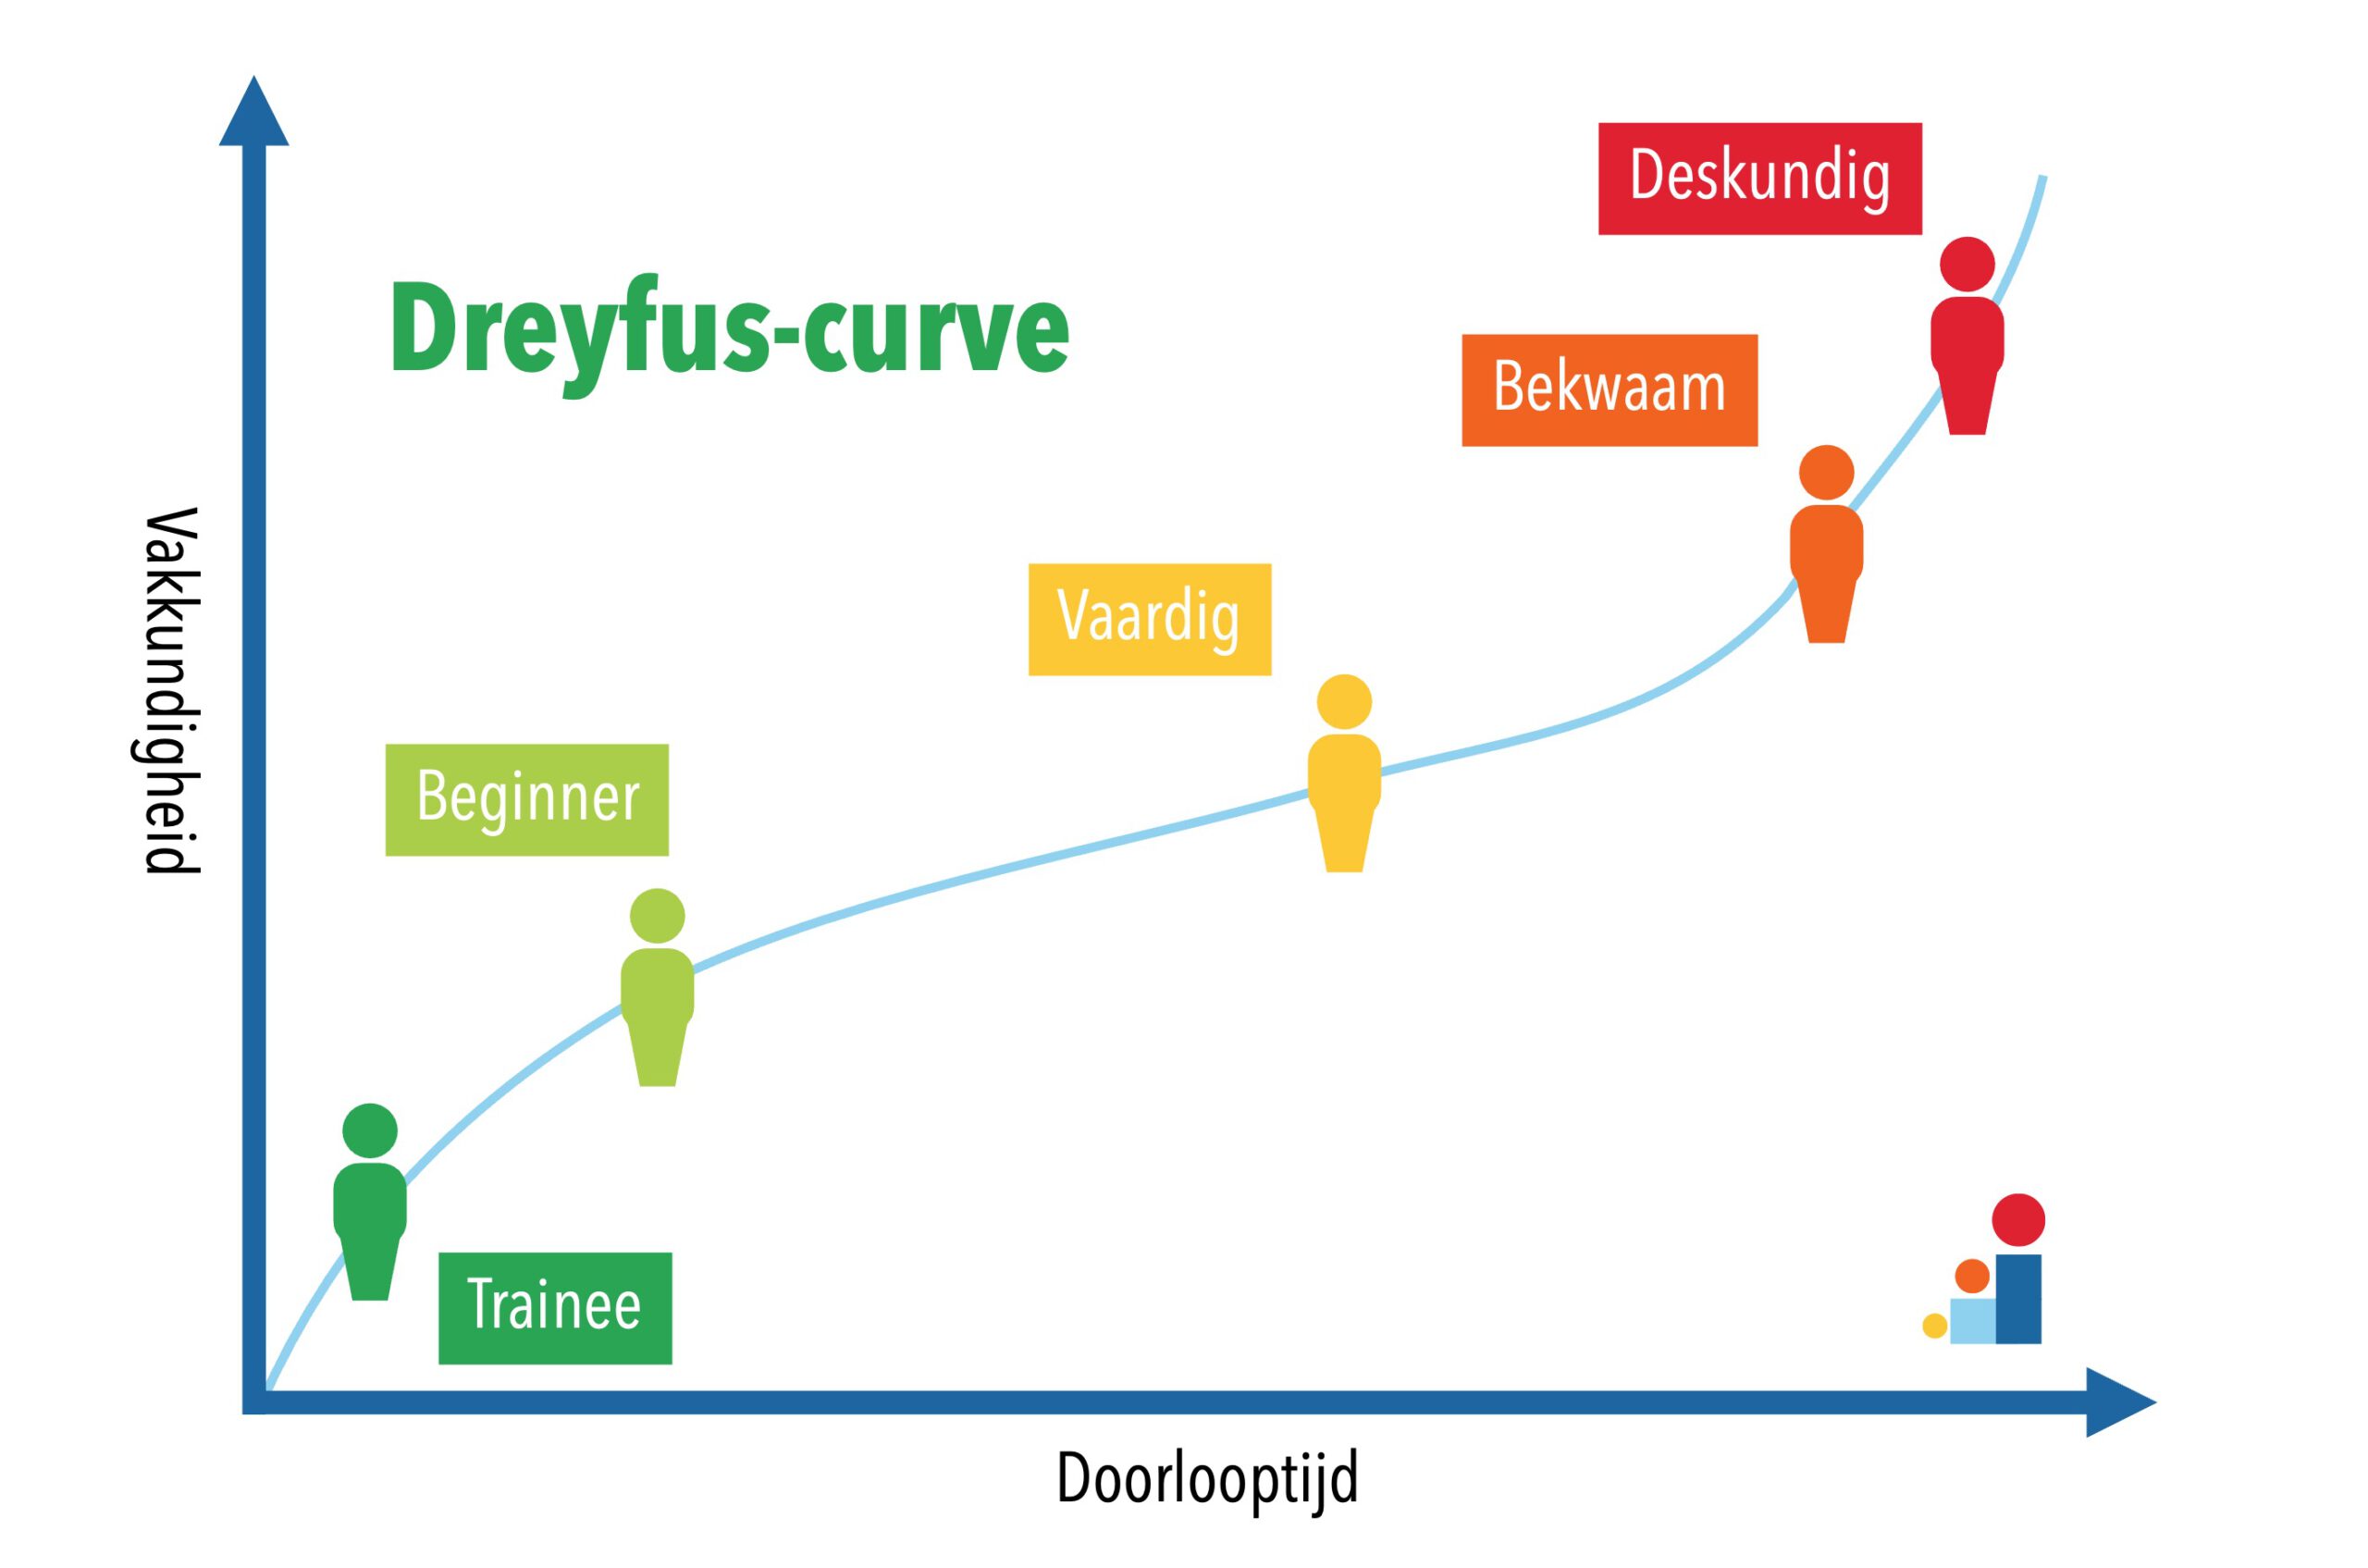 Dreyfus model